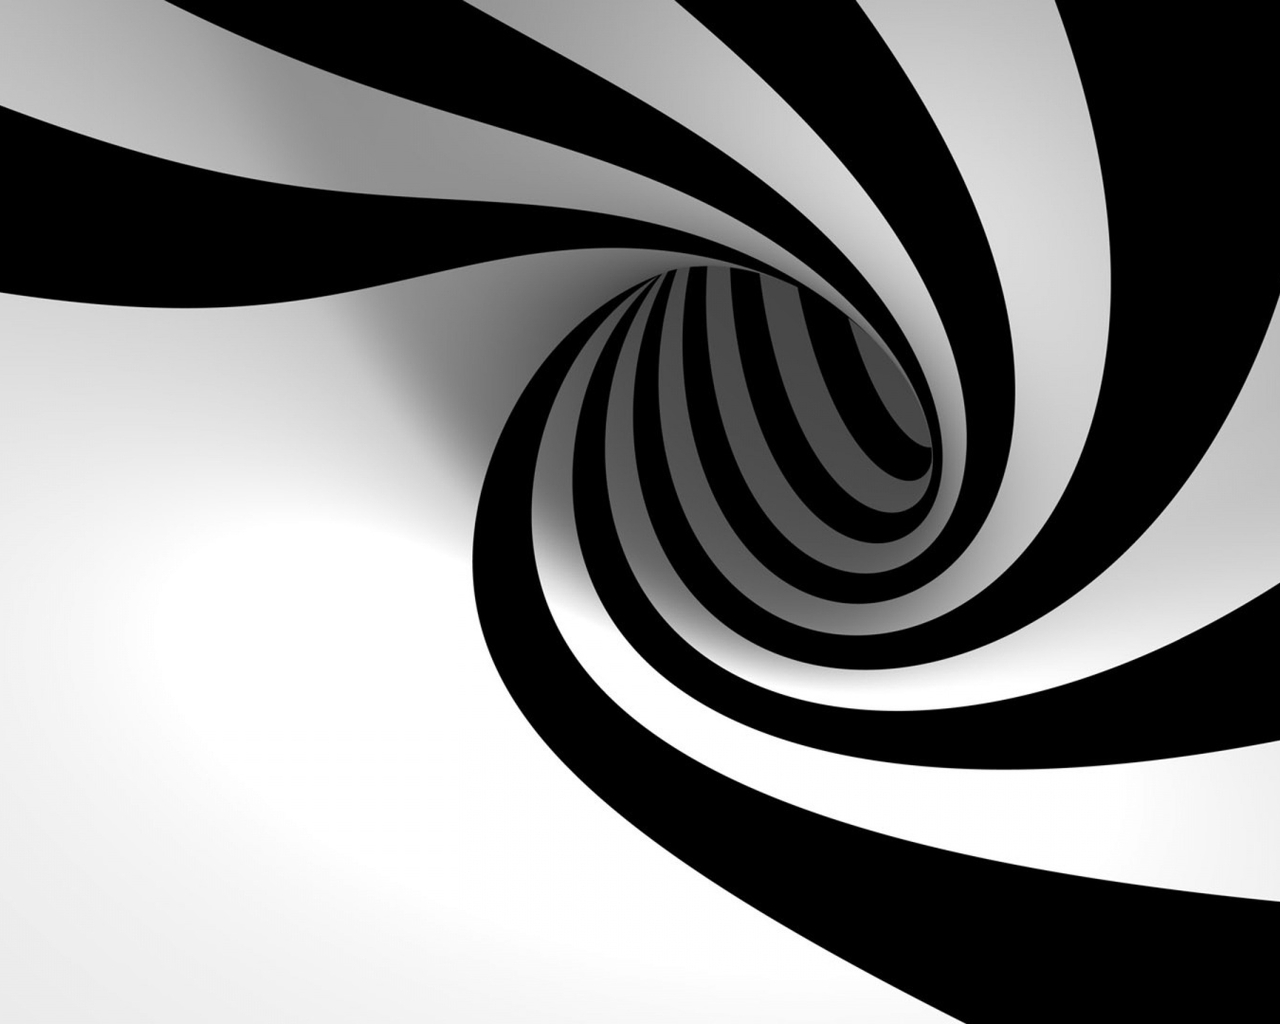 Картинка: Чёрный, белый, линия, изгиб, спираль, фон